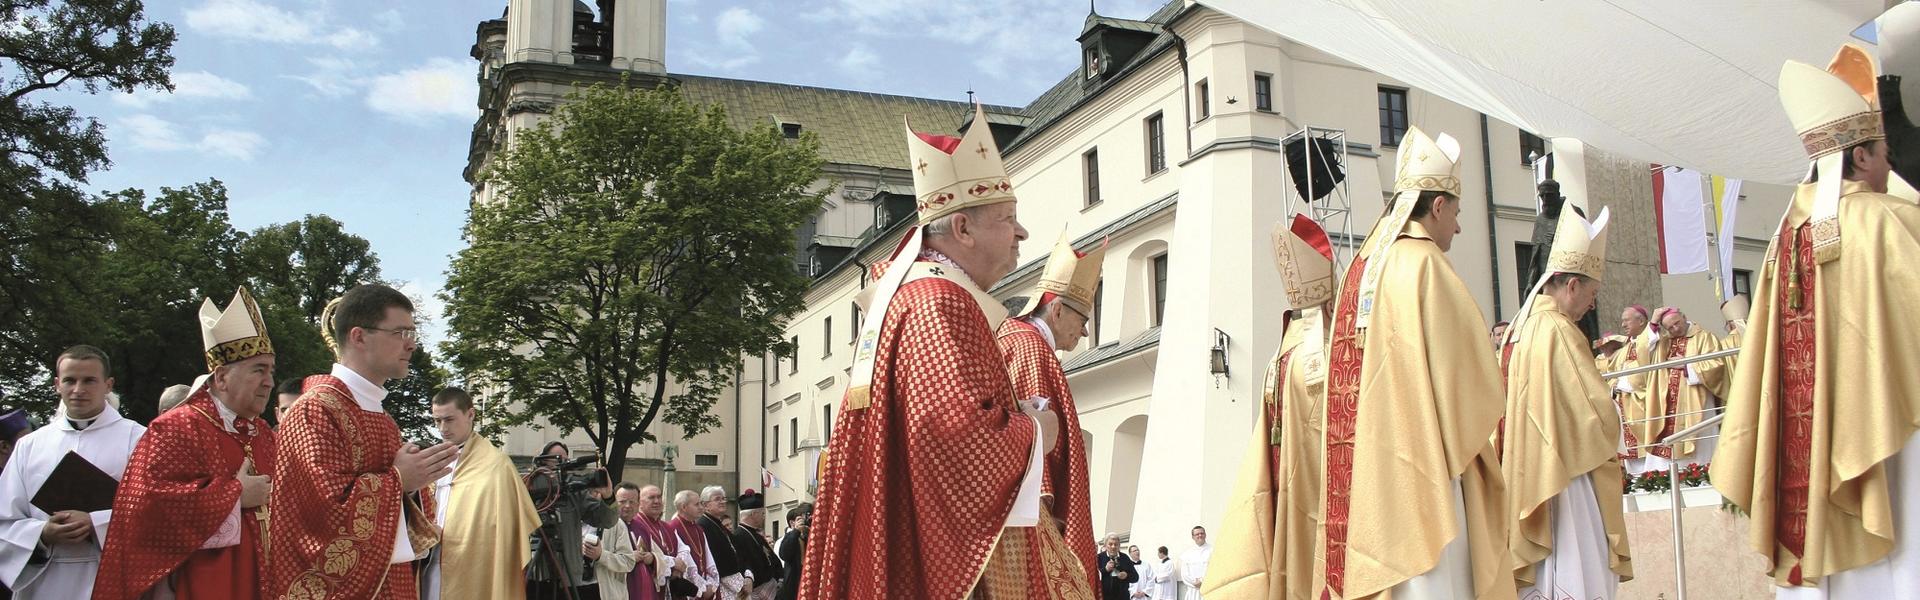 Grupa księży idących w stronę ołtarza.